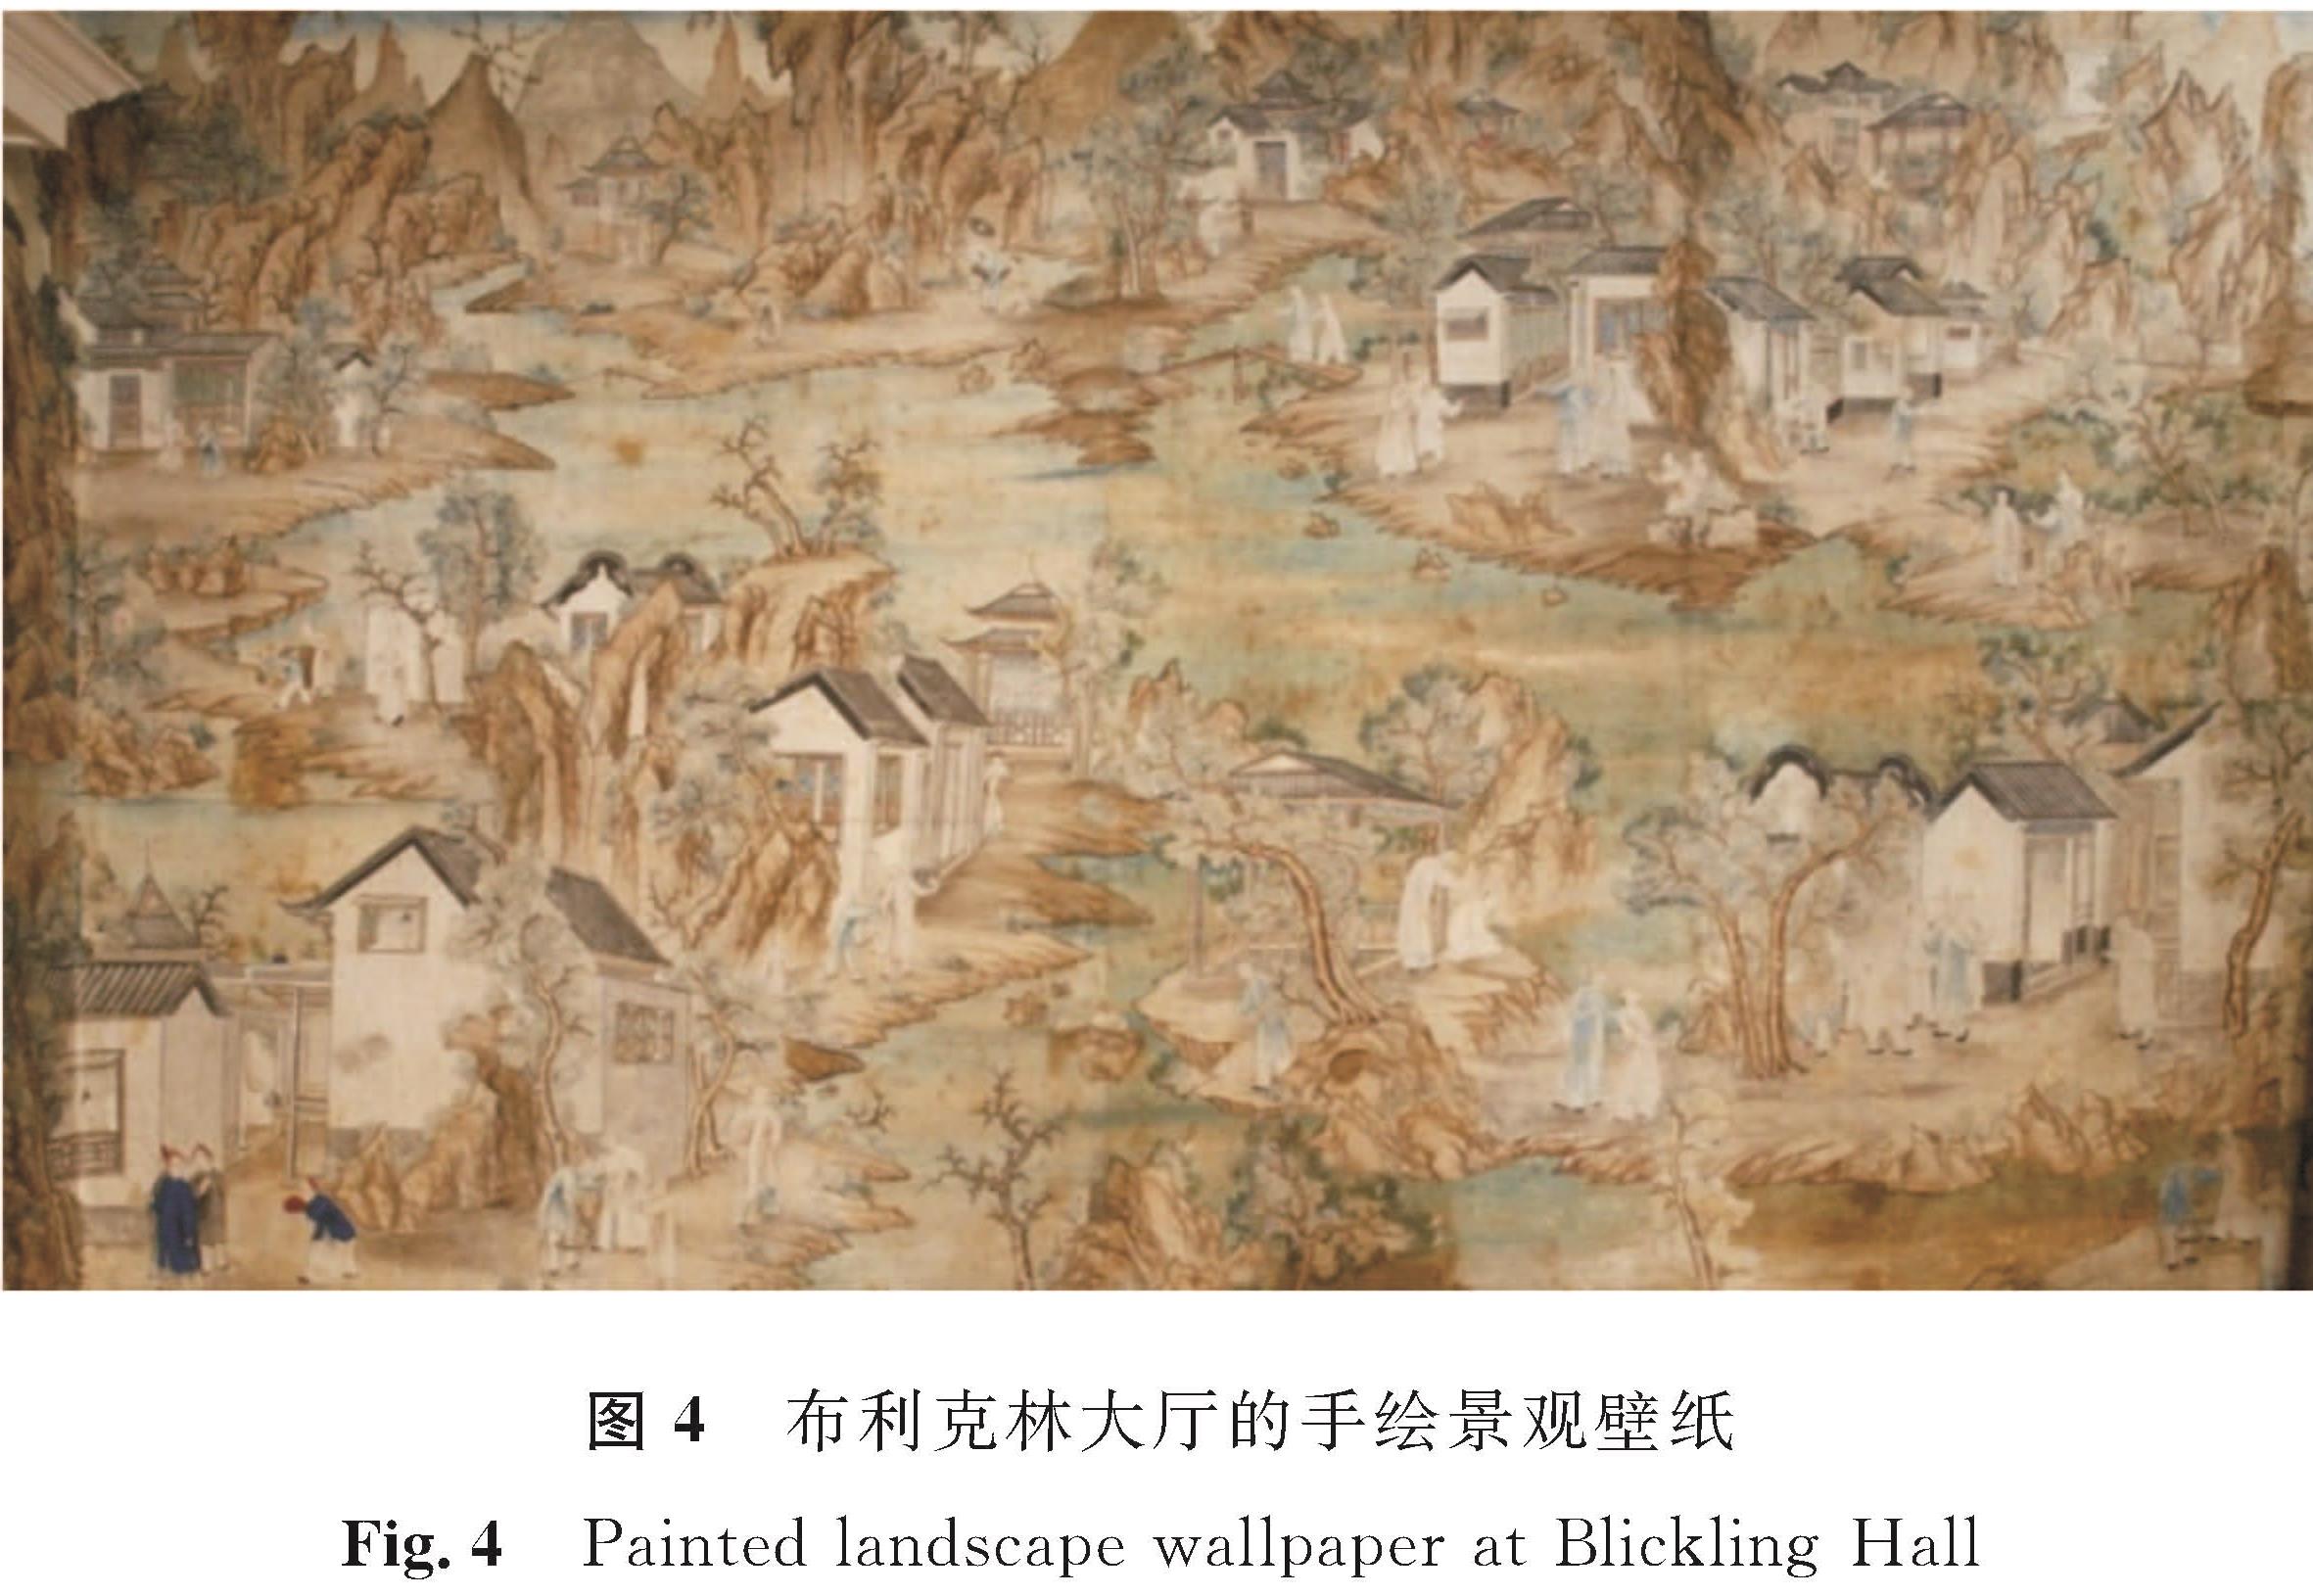 图4 布利克林大厅的手绘景观壁纸<br/>Fig.4 Painted landscape wallpaper at Blickling Hall